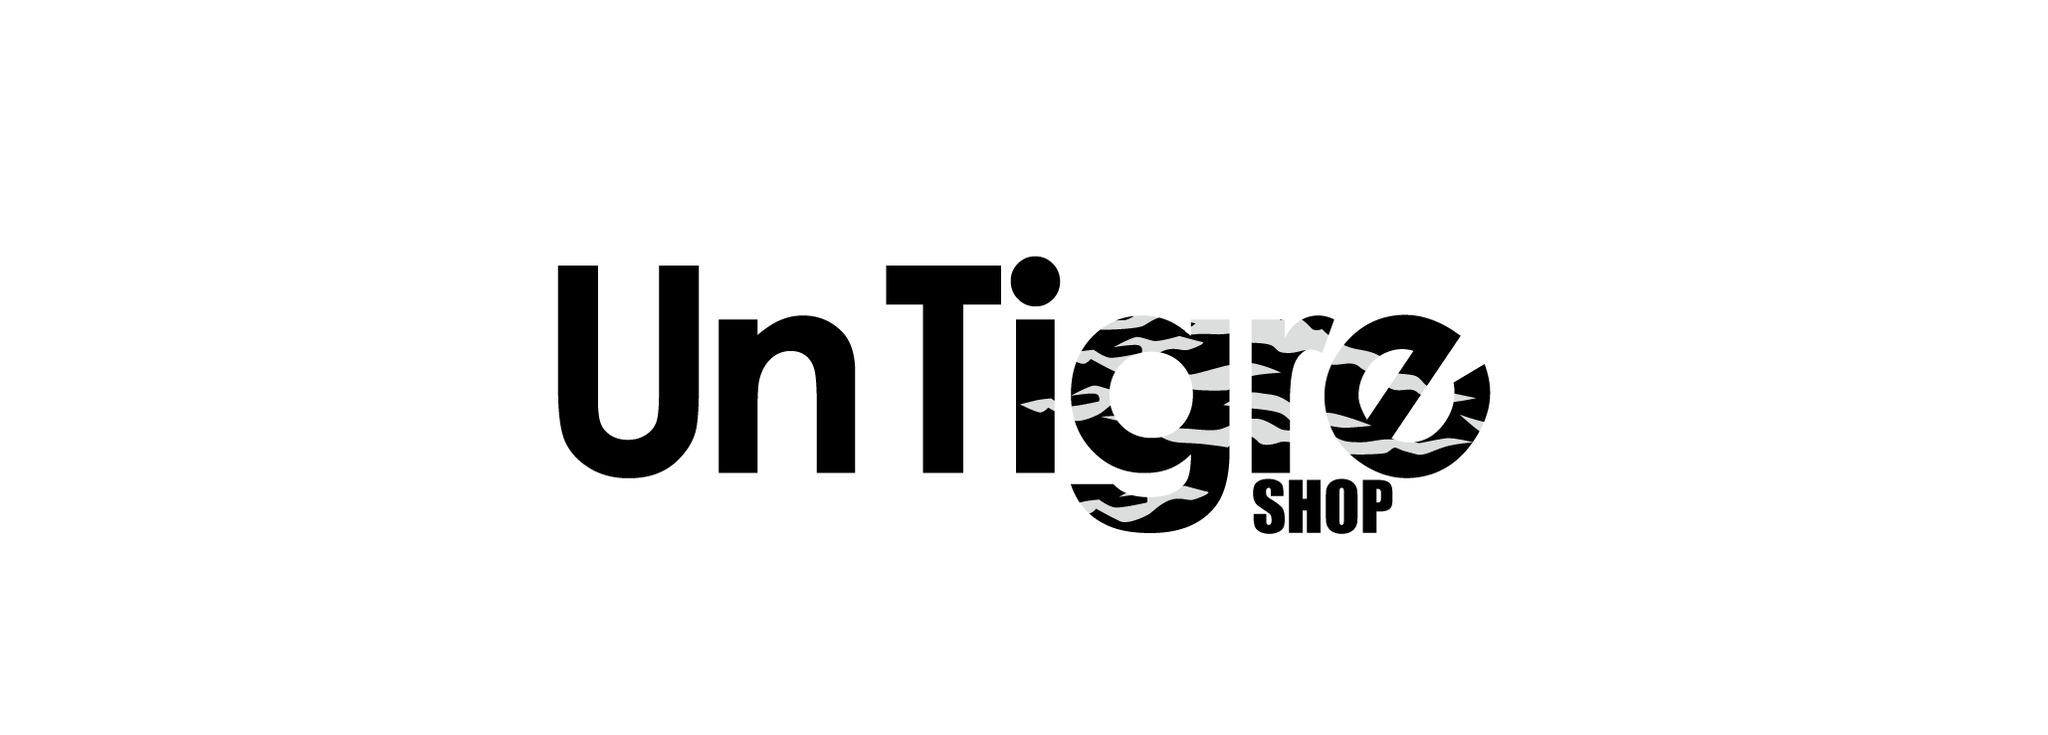 UnTigre Select Shop